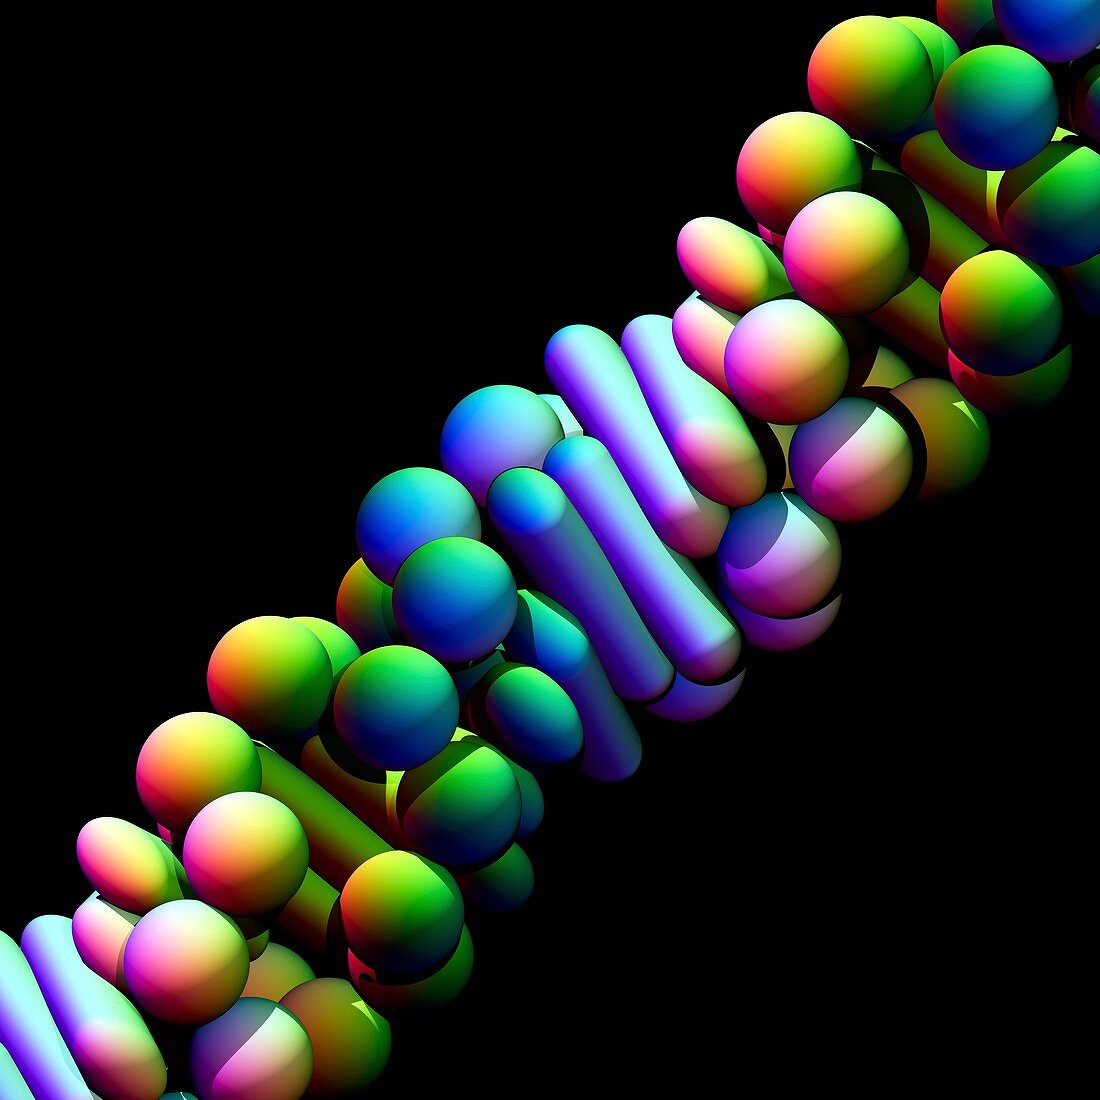 Z-DNA molecule,illustration